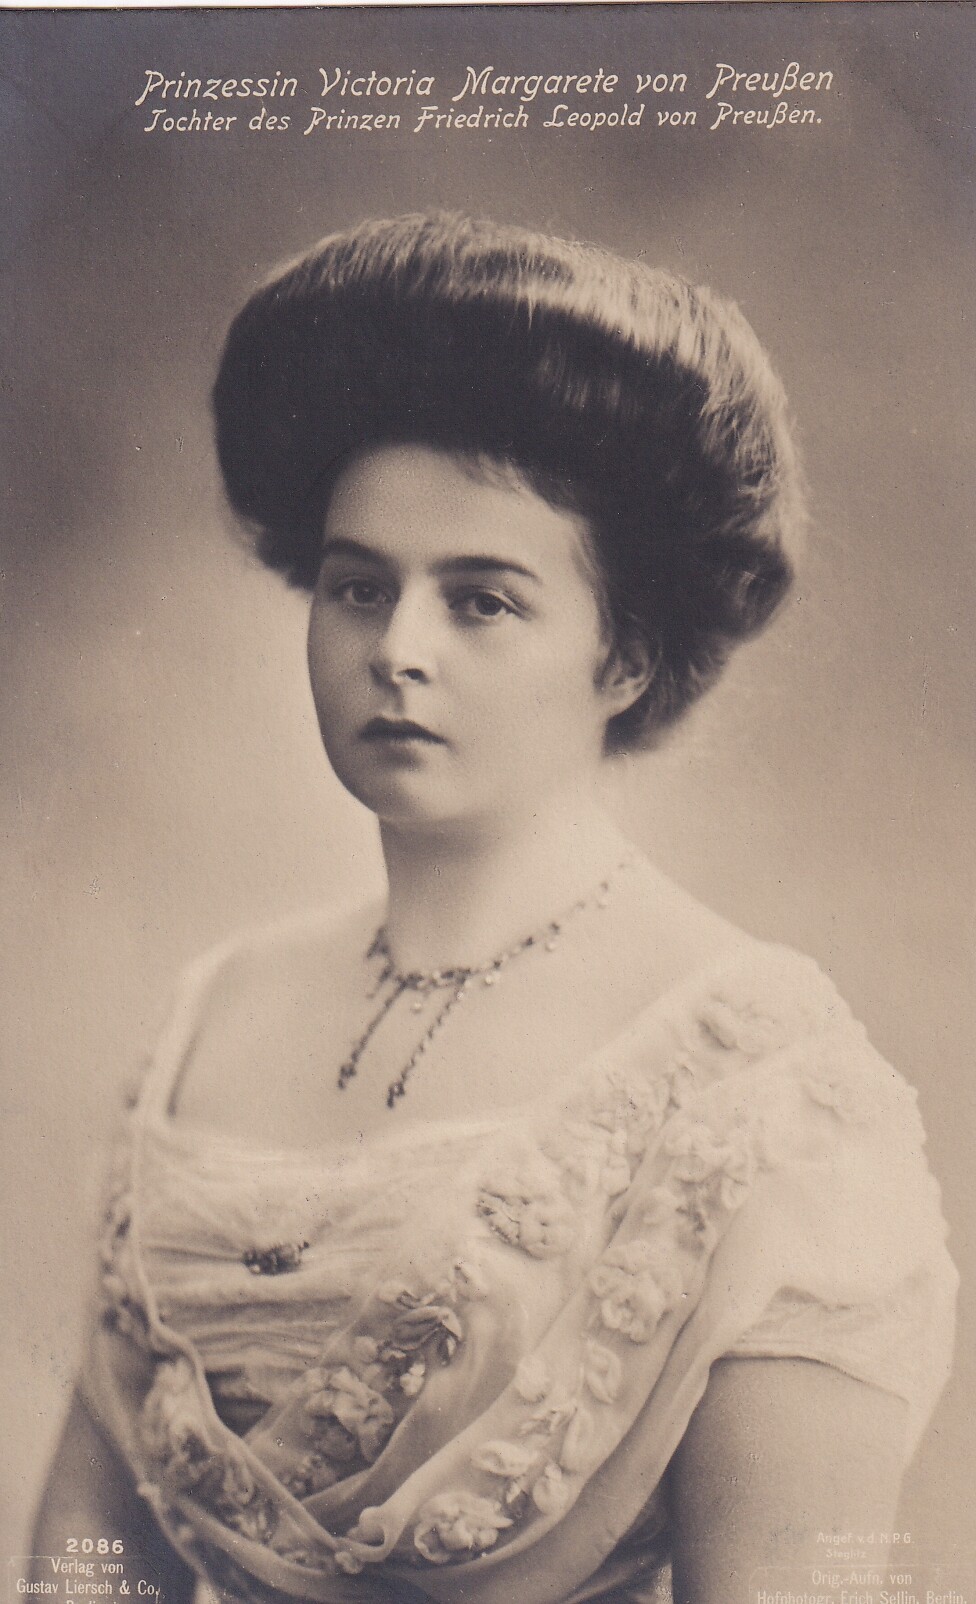 Bildpostkarte mit Foto der Prinzessin Victoria Margarete von Preußen (1890-1923), 1908 (Schloß Wernigerode GmbH RR-F)